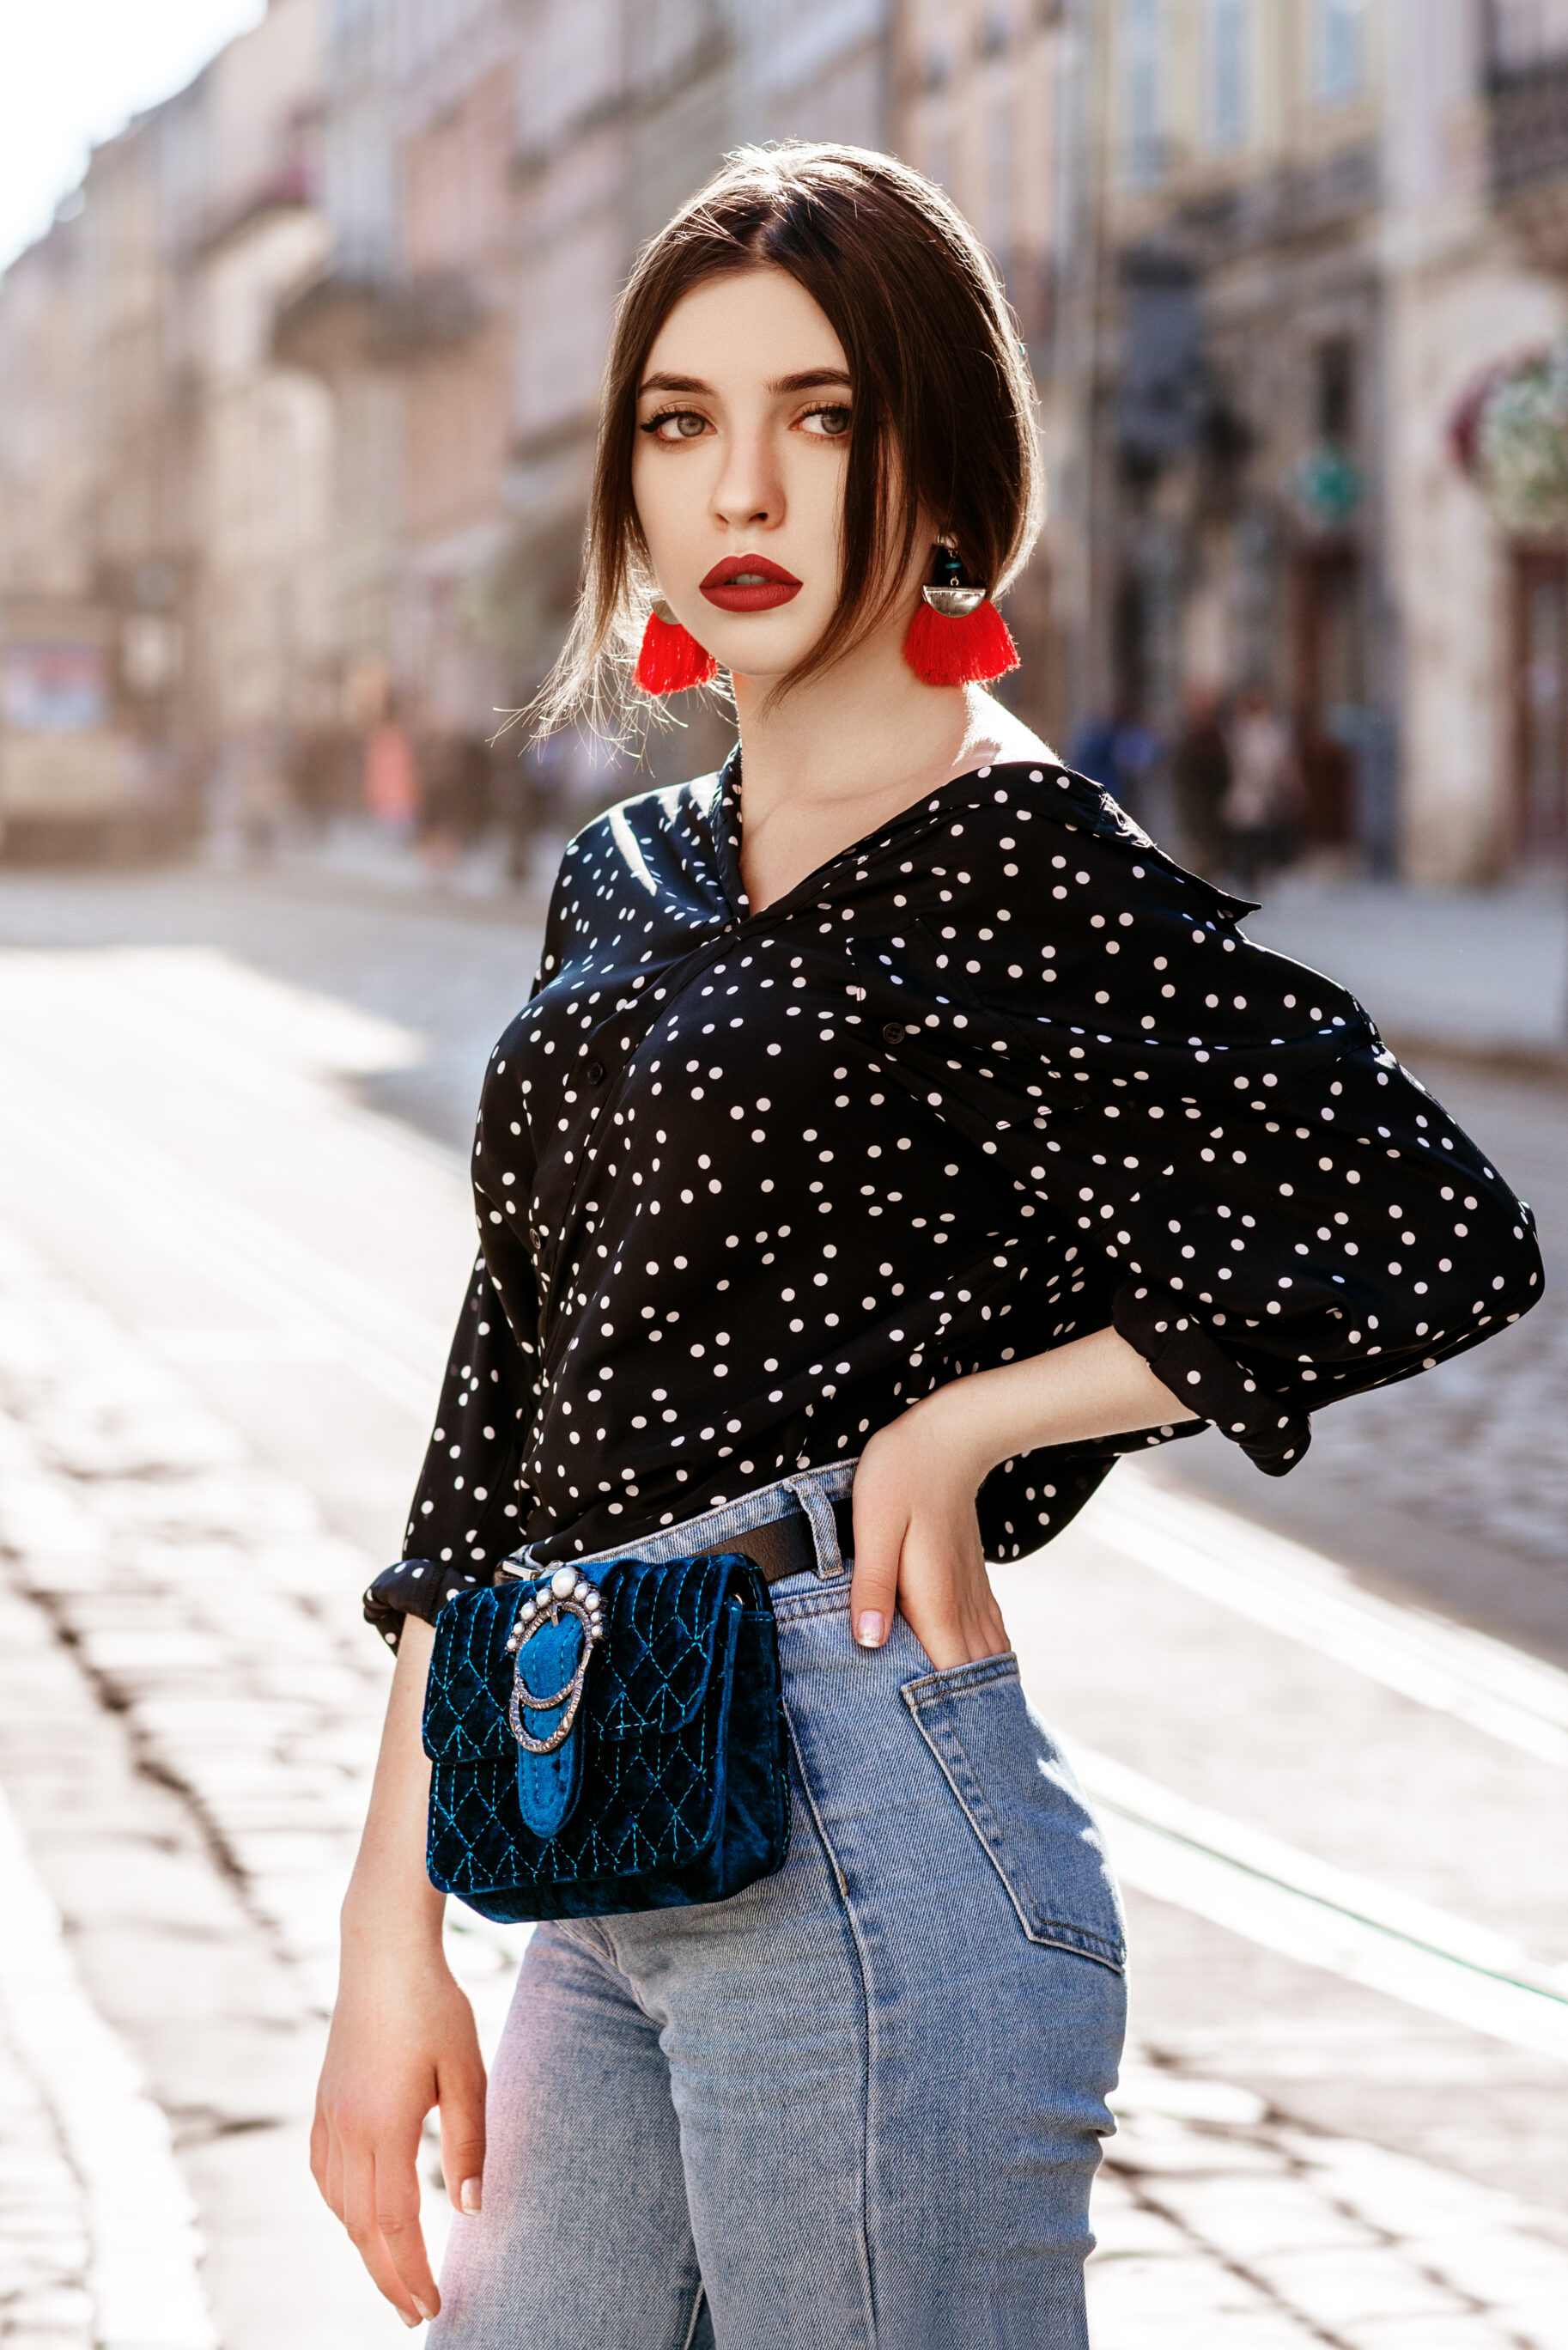 Red Tassel Earrings, Polka Dot Blouse, Jeans & Blue Waist Bag